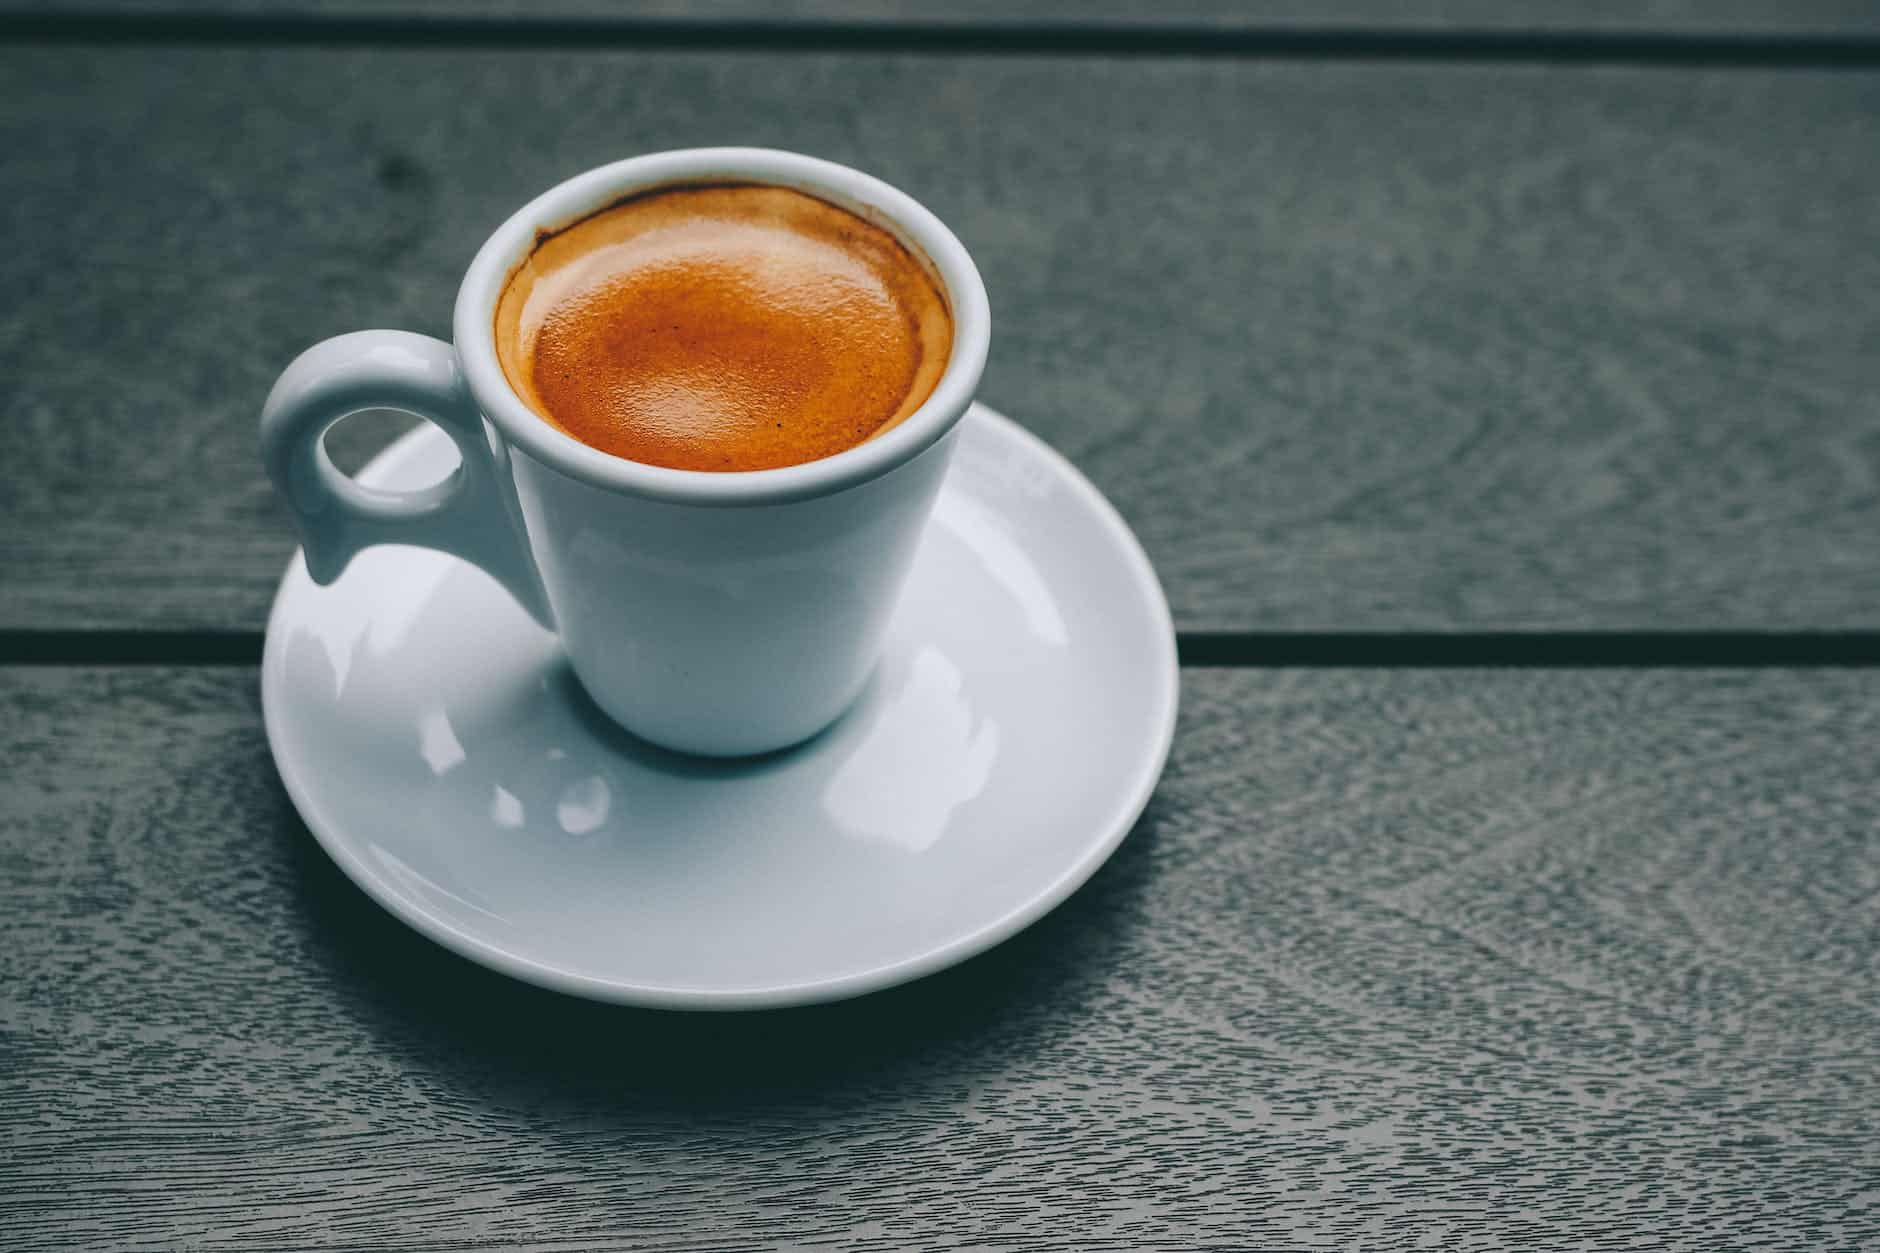 How to Pour Espresso Into the Brew